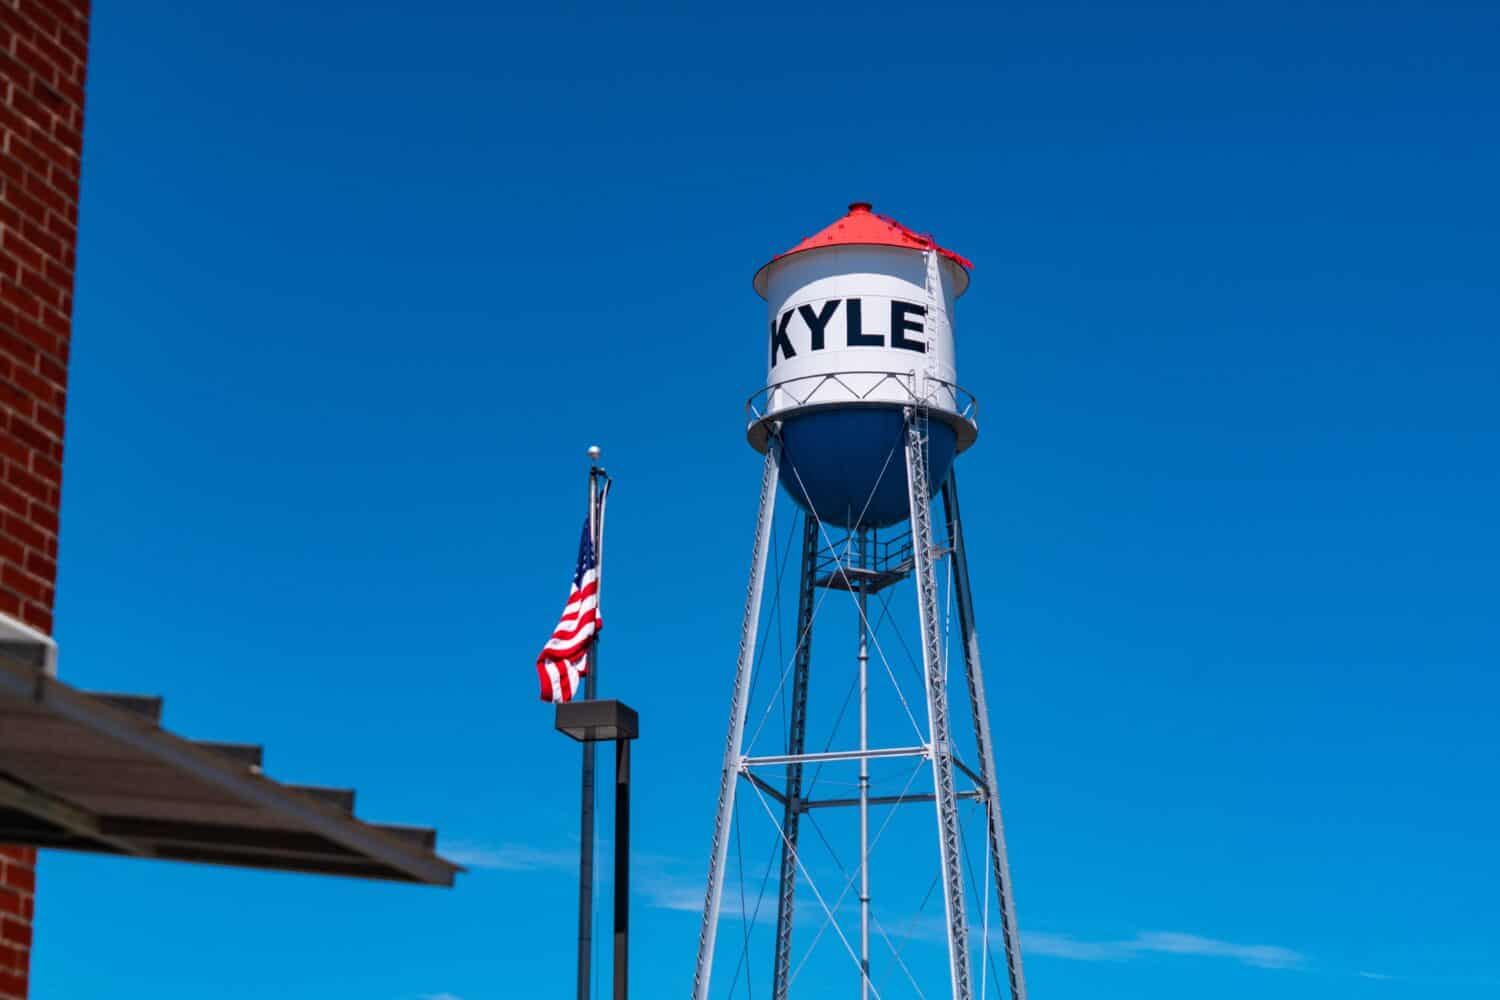 Torre dell'acqua rossa, bianca e blu nella piccola città del Texas con cielo blu nella città del Texas centrale Kyle, Texas, USA con la bandiera americana sull'asta della bandiera